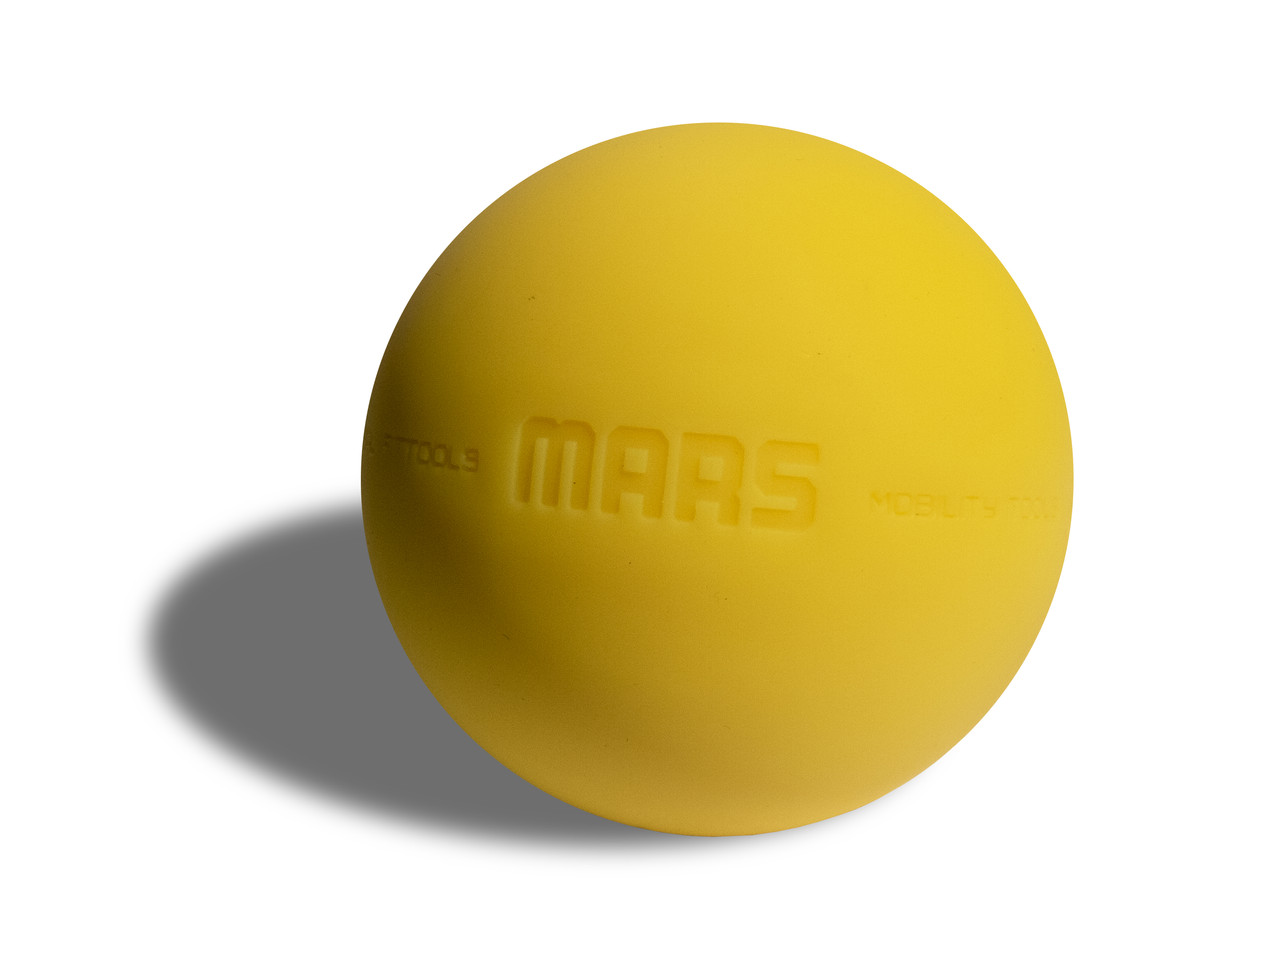 Мяч для МФР 9 см одинарный желтый (FT-MARS-YELLOW), фото 1